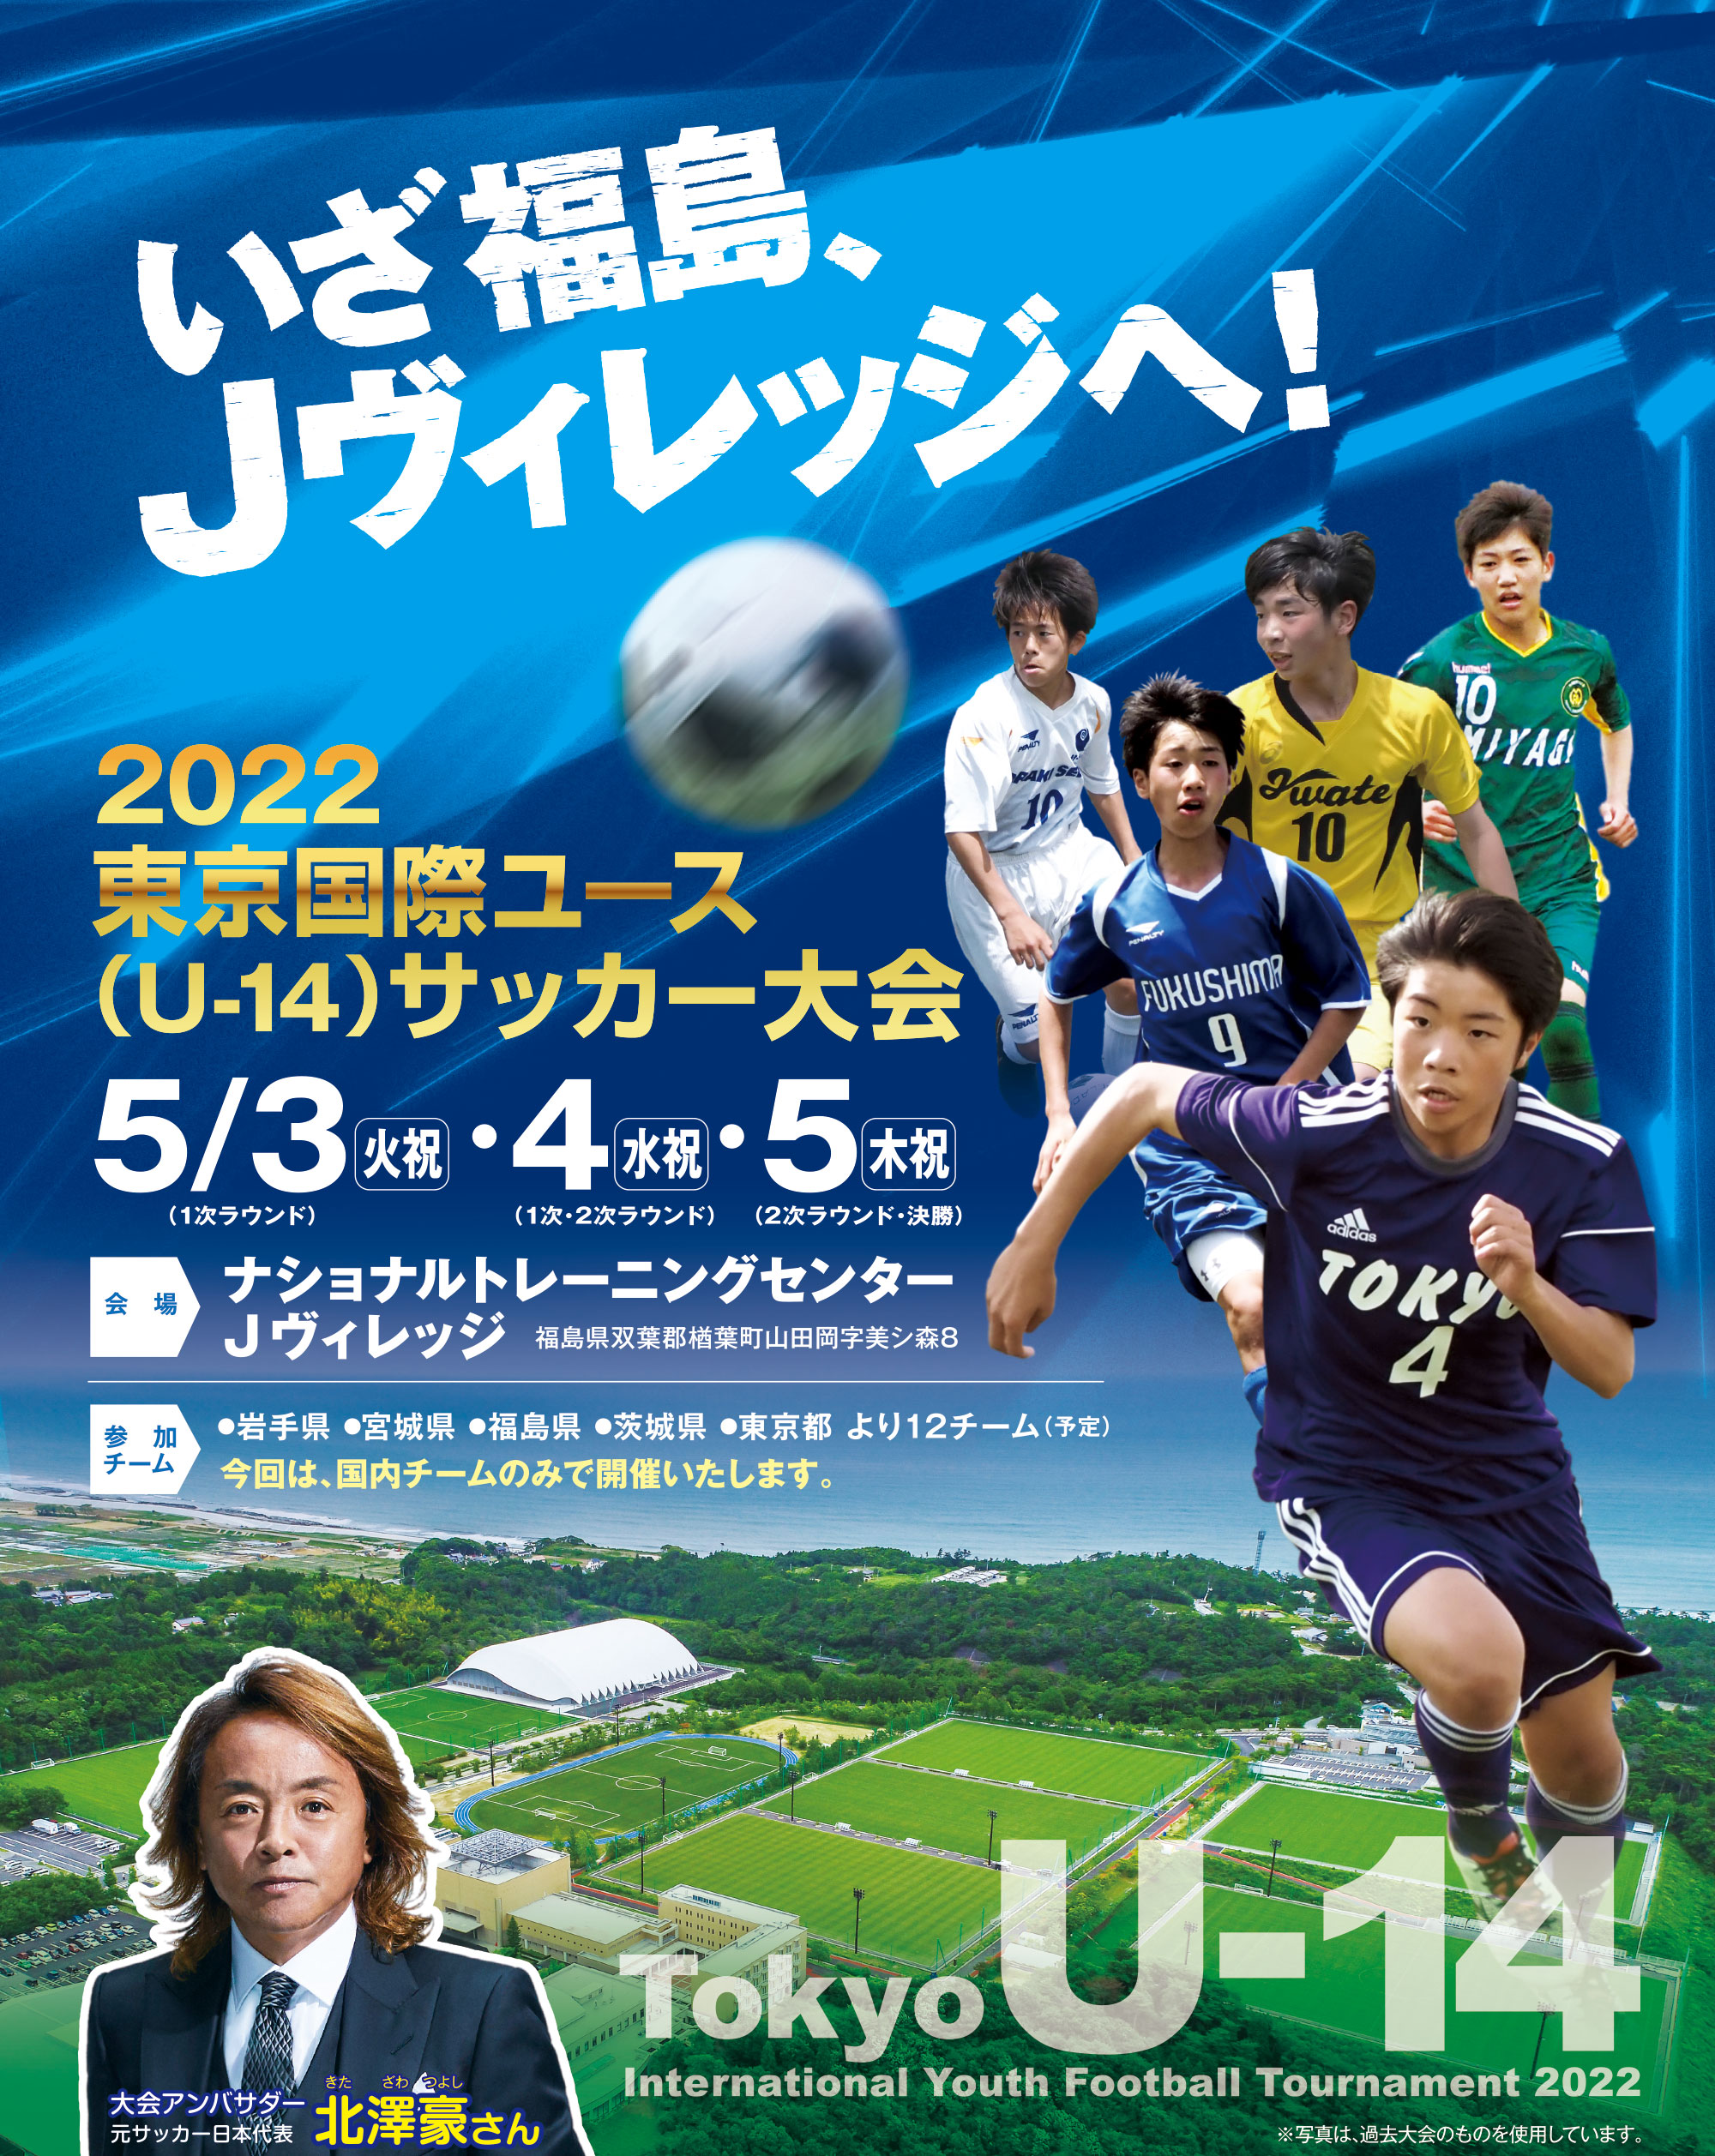 2022東京国際ユース(U-14)サッカー大会 Tokyo U-14 International Youth Football Tournament